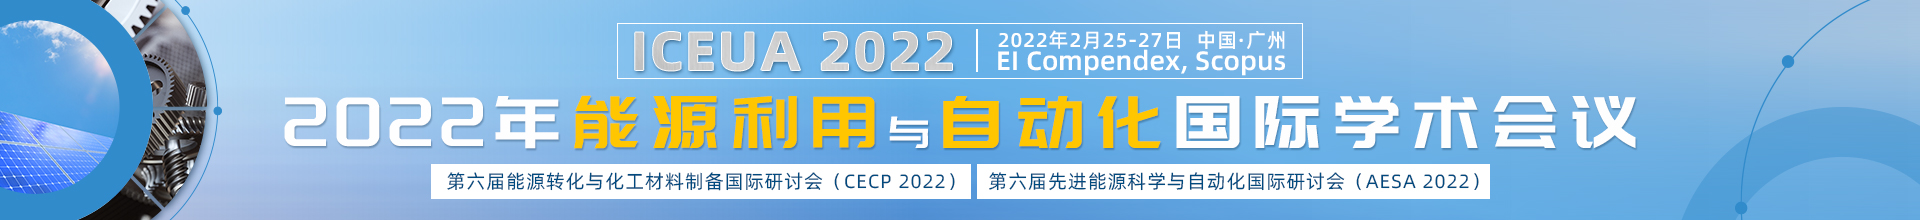 2月广州-ICEUA-2022-学术会议云PC端1920x220-陈军-20211201.jpg